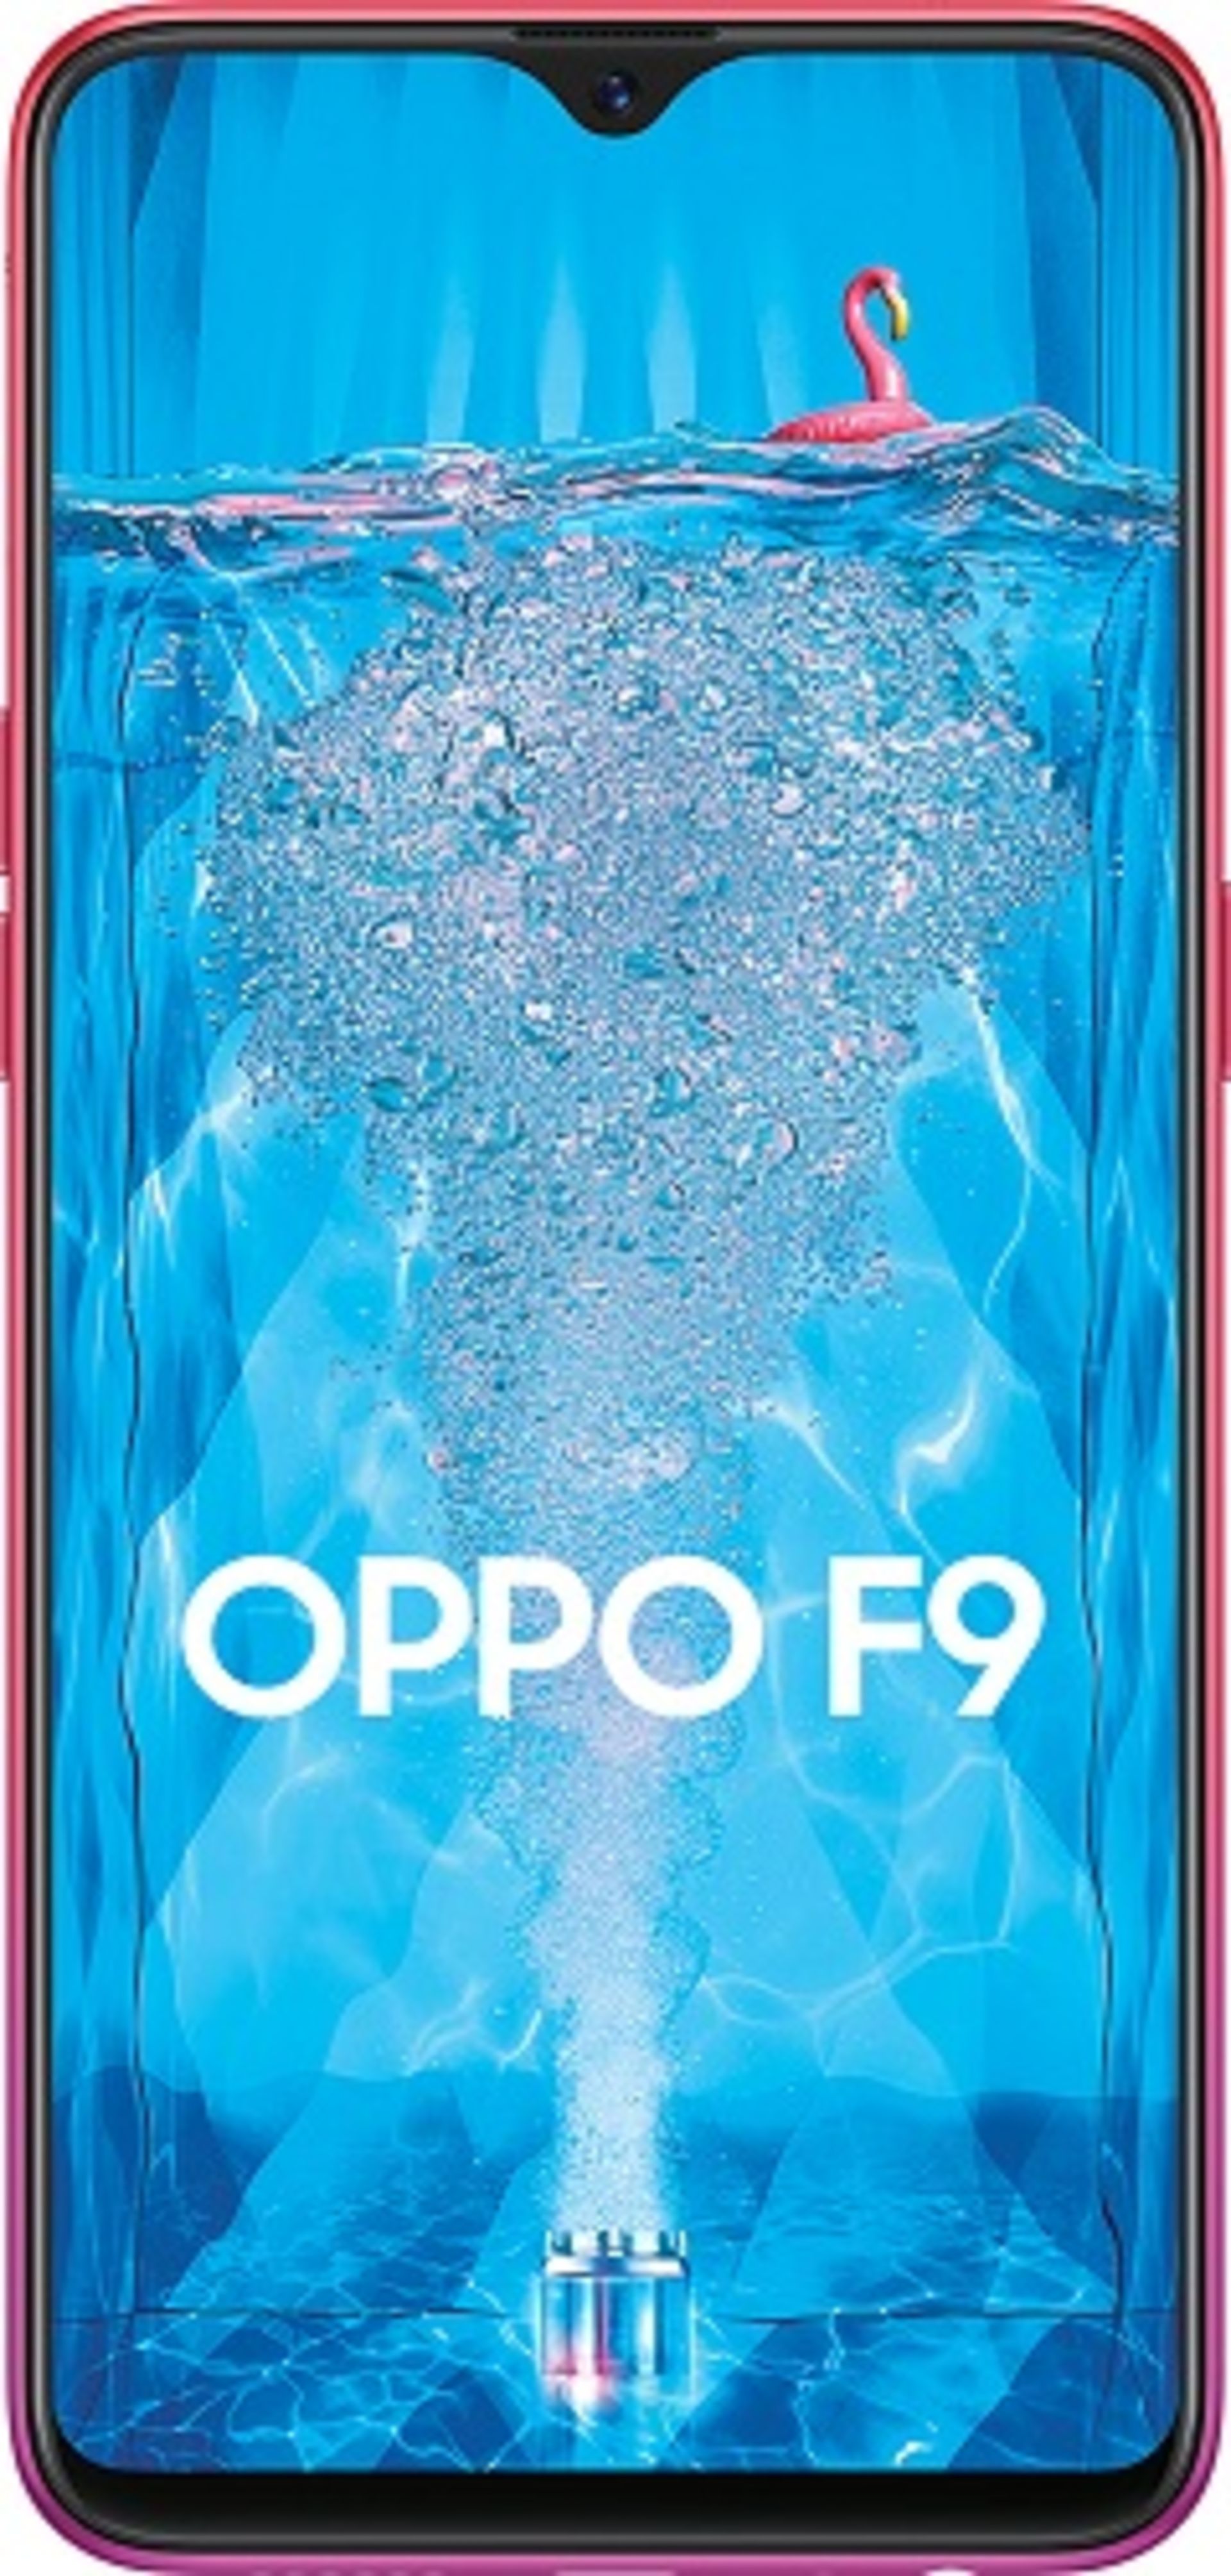 اوپو اف 9 / Oppo F9